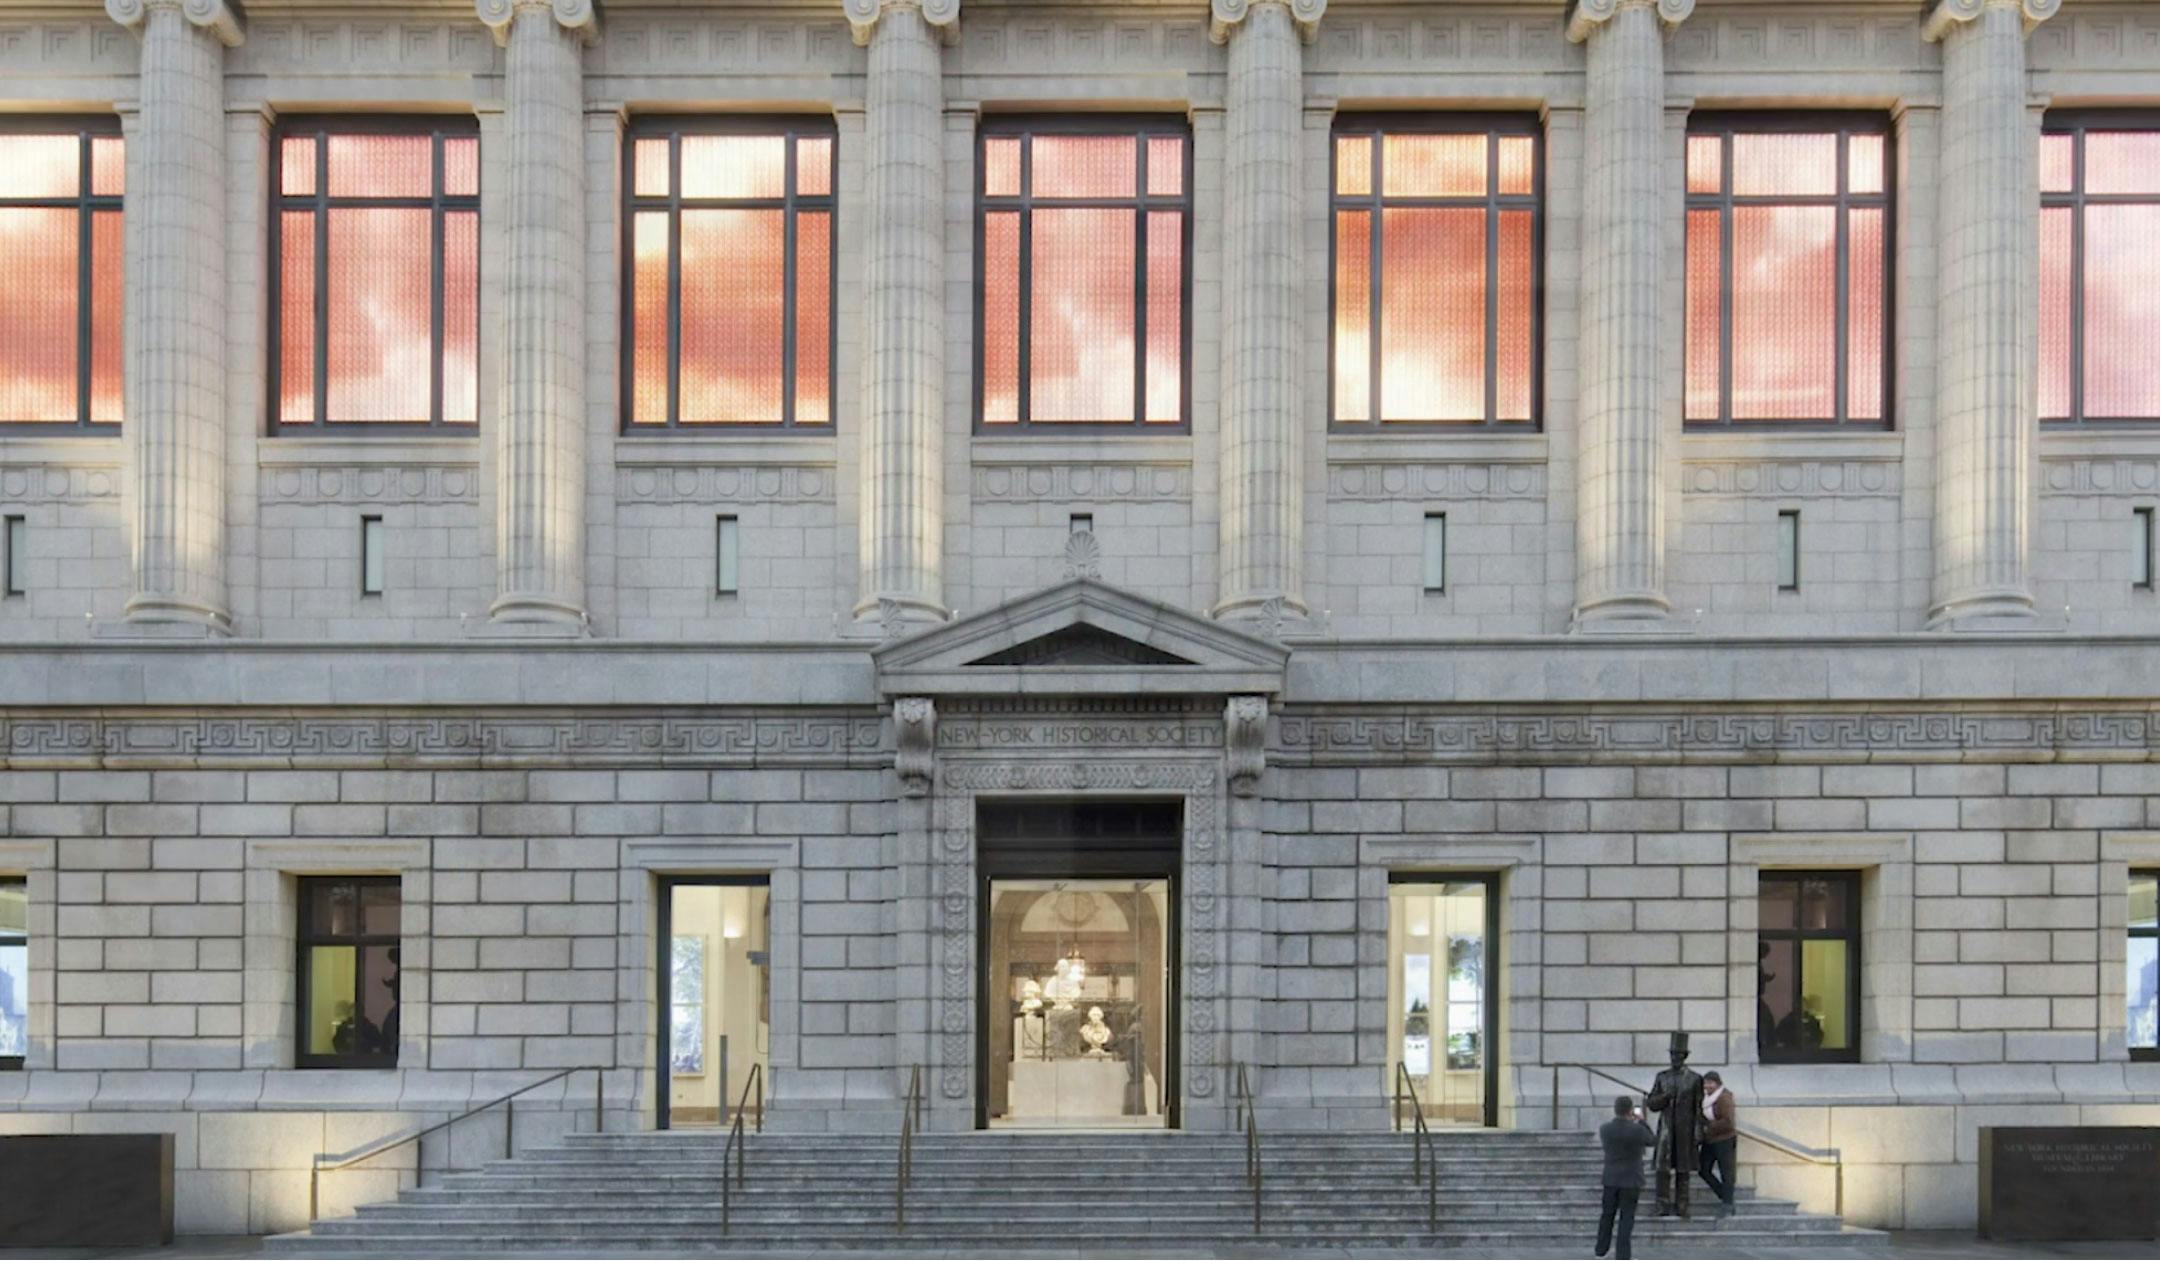 New-York Historical Society building facade